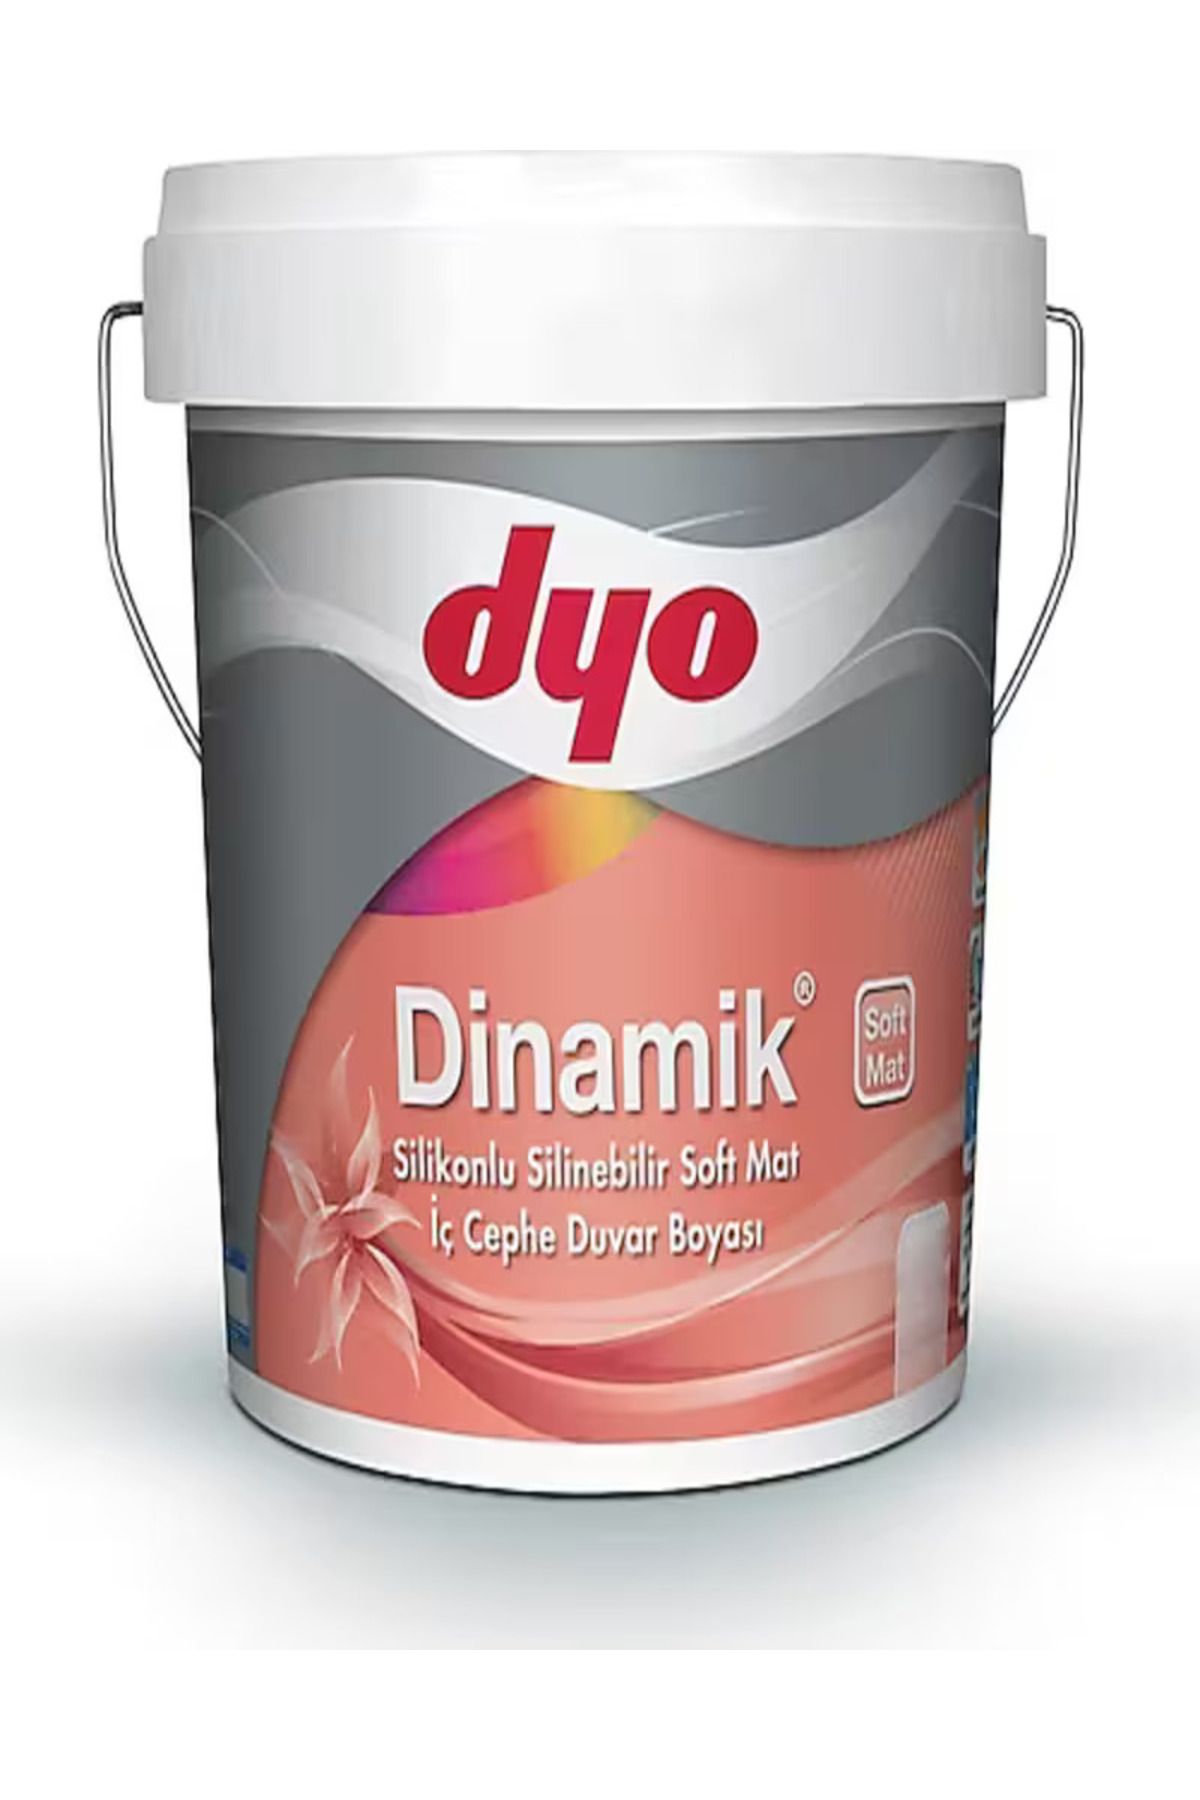 Dyo Dinamik Silikonlu Silinebilir Soft Mat Iç Cephe Duvar Boyası 2,5 Lt